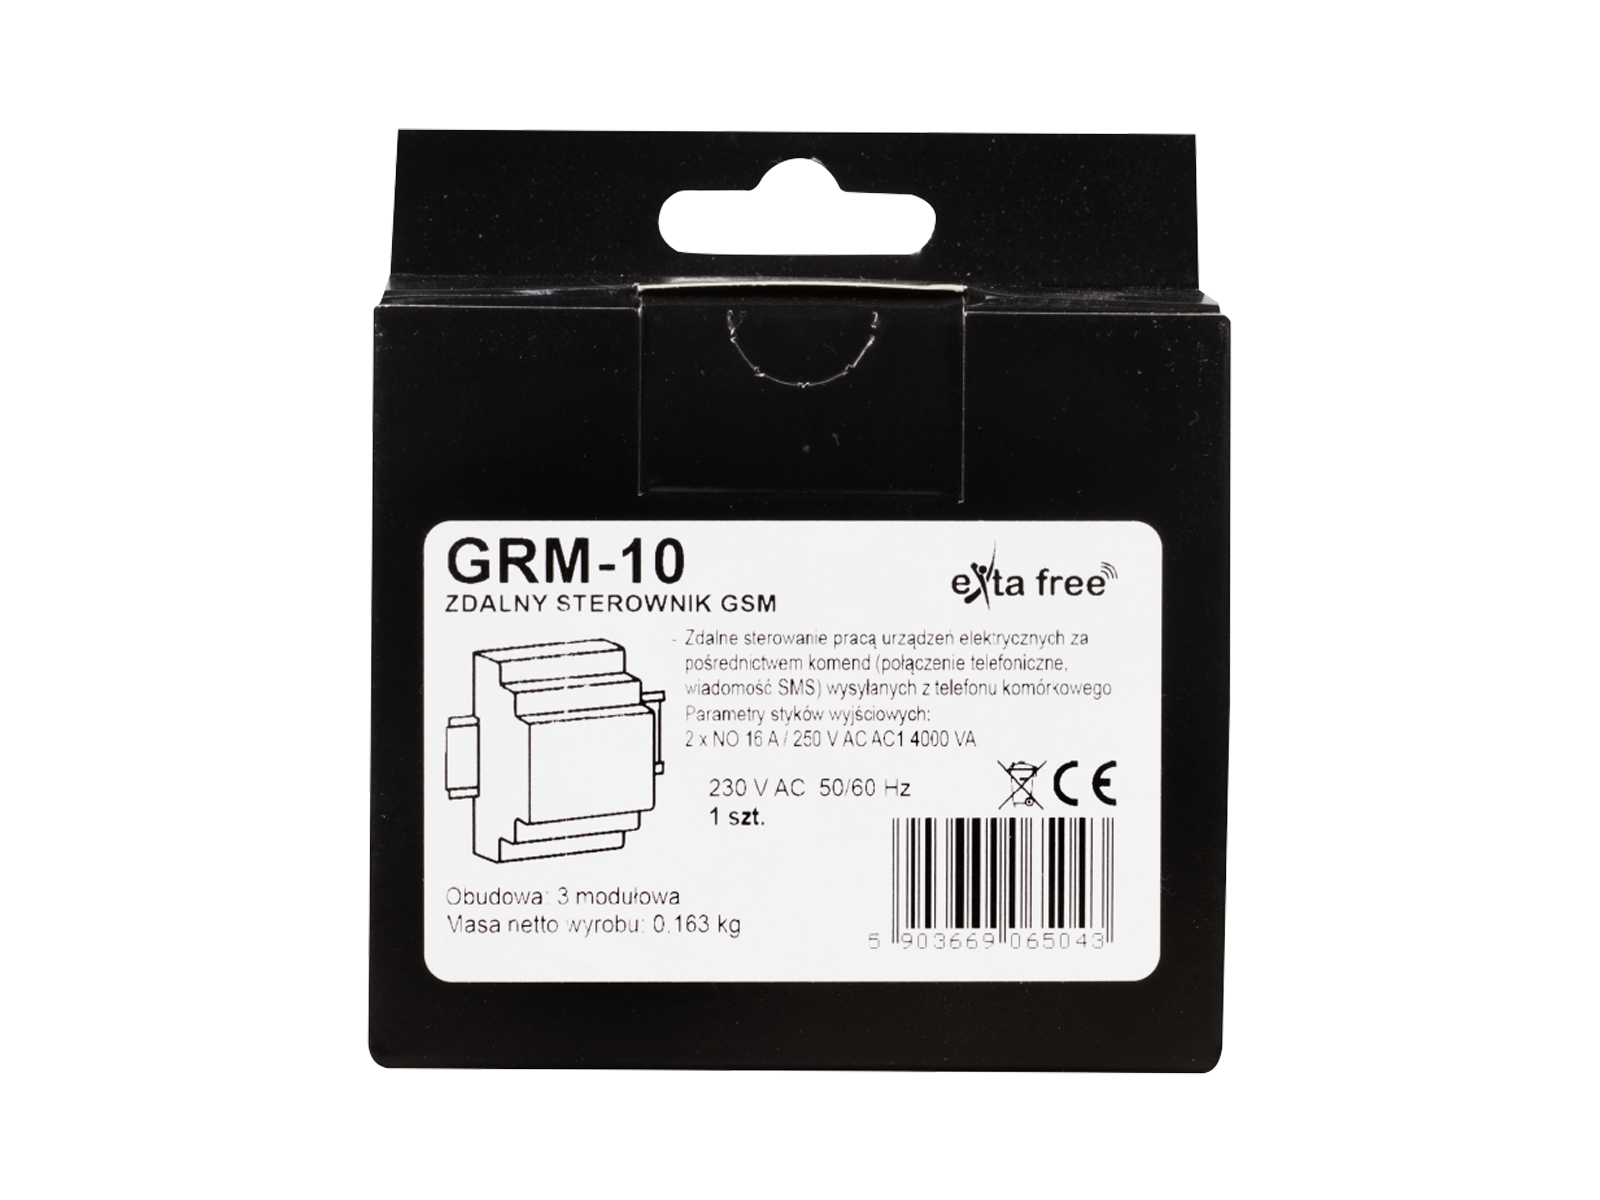 GSM ovládání GRM-10